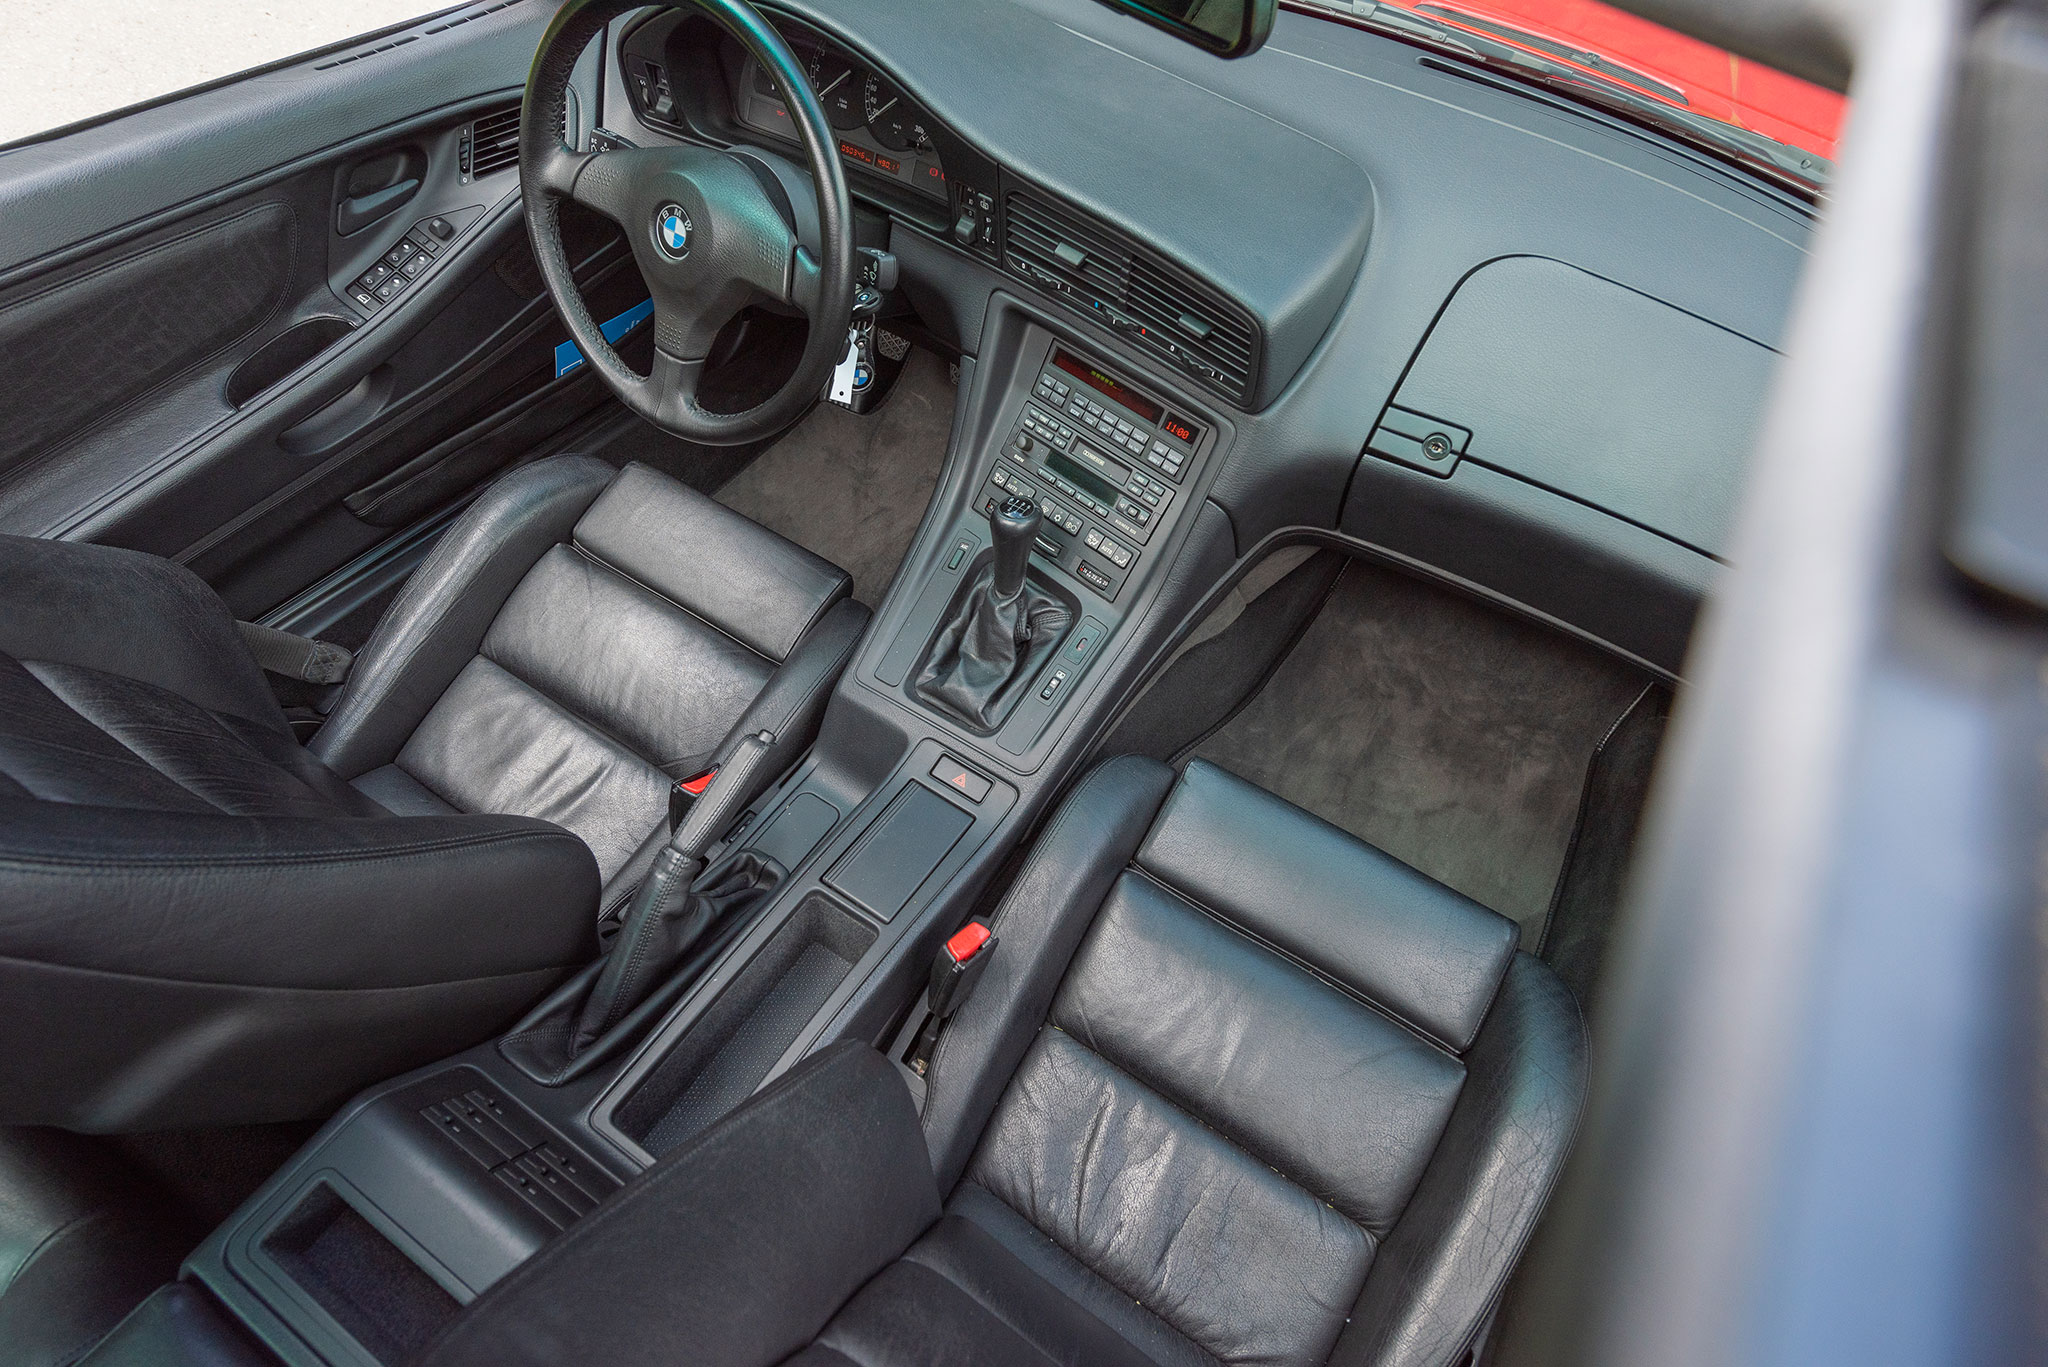 1992 BMW 850i c'est net et c'est de qualité.